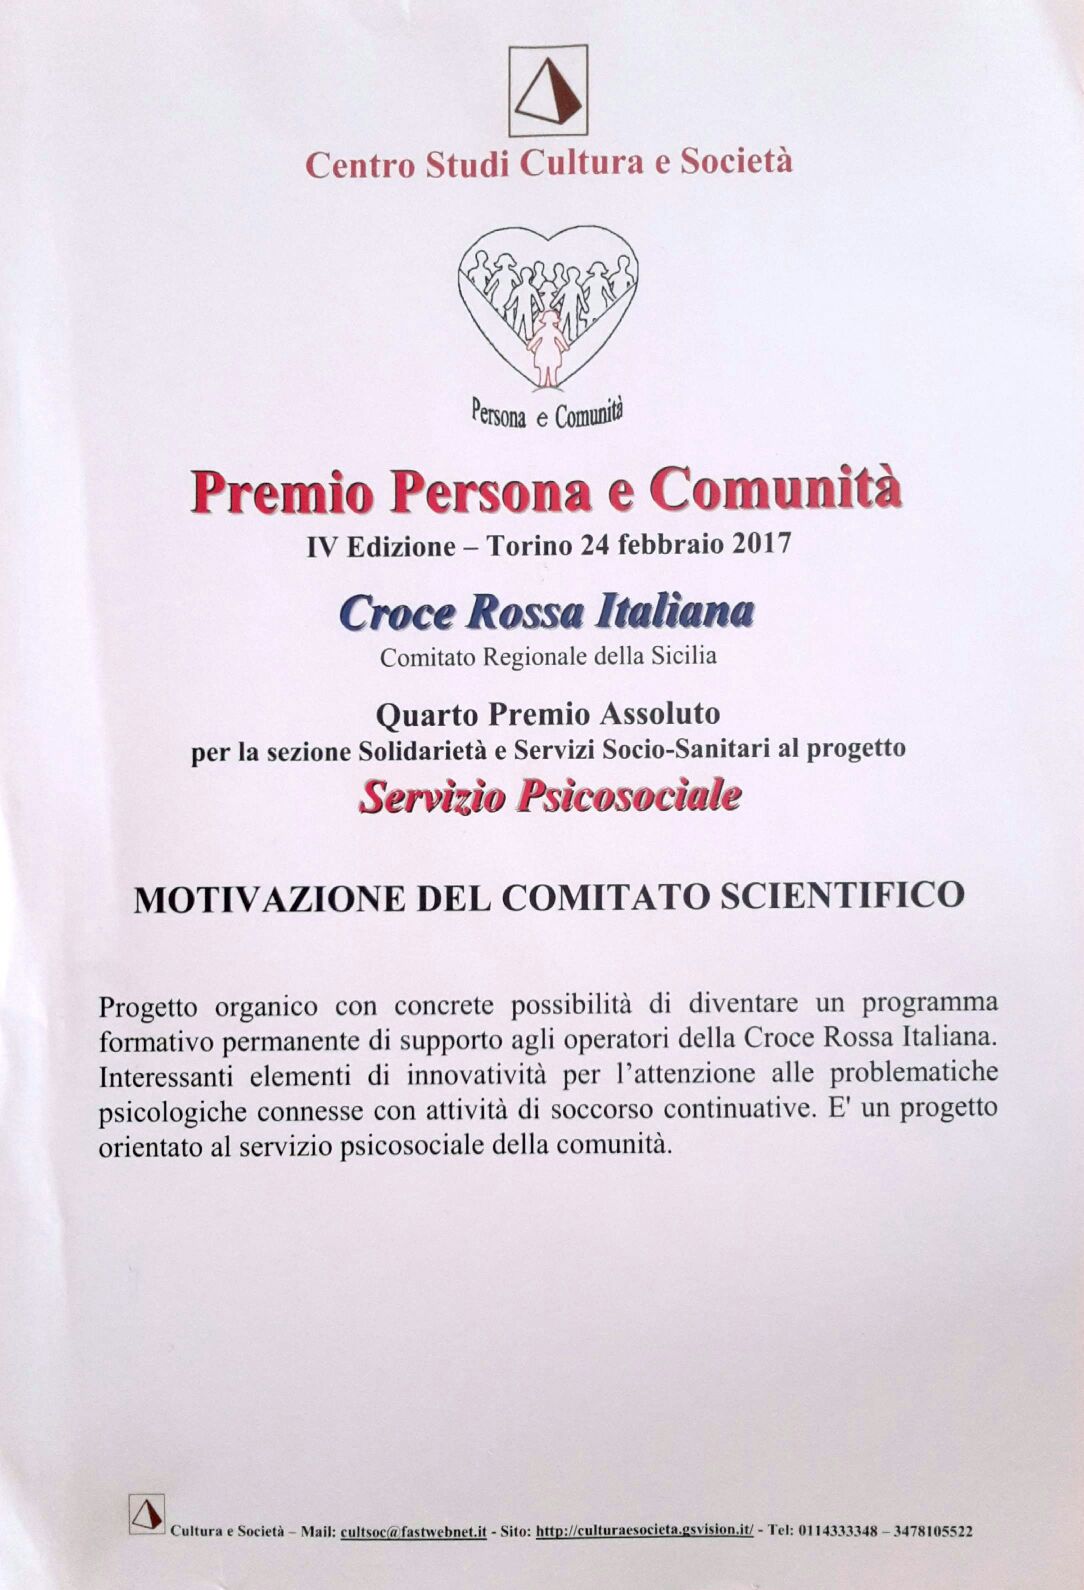 CRI Sicilia a Torino per ricevere il Premio Persona e Comunità